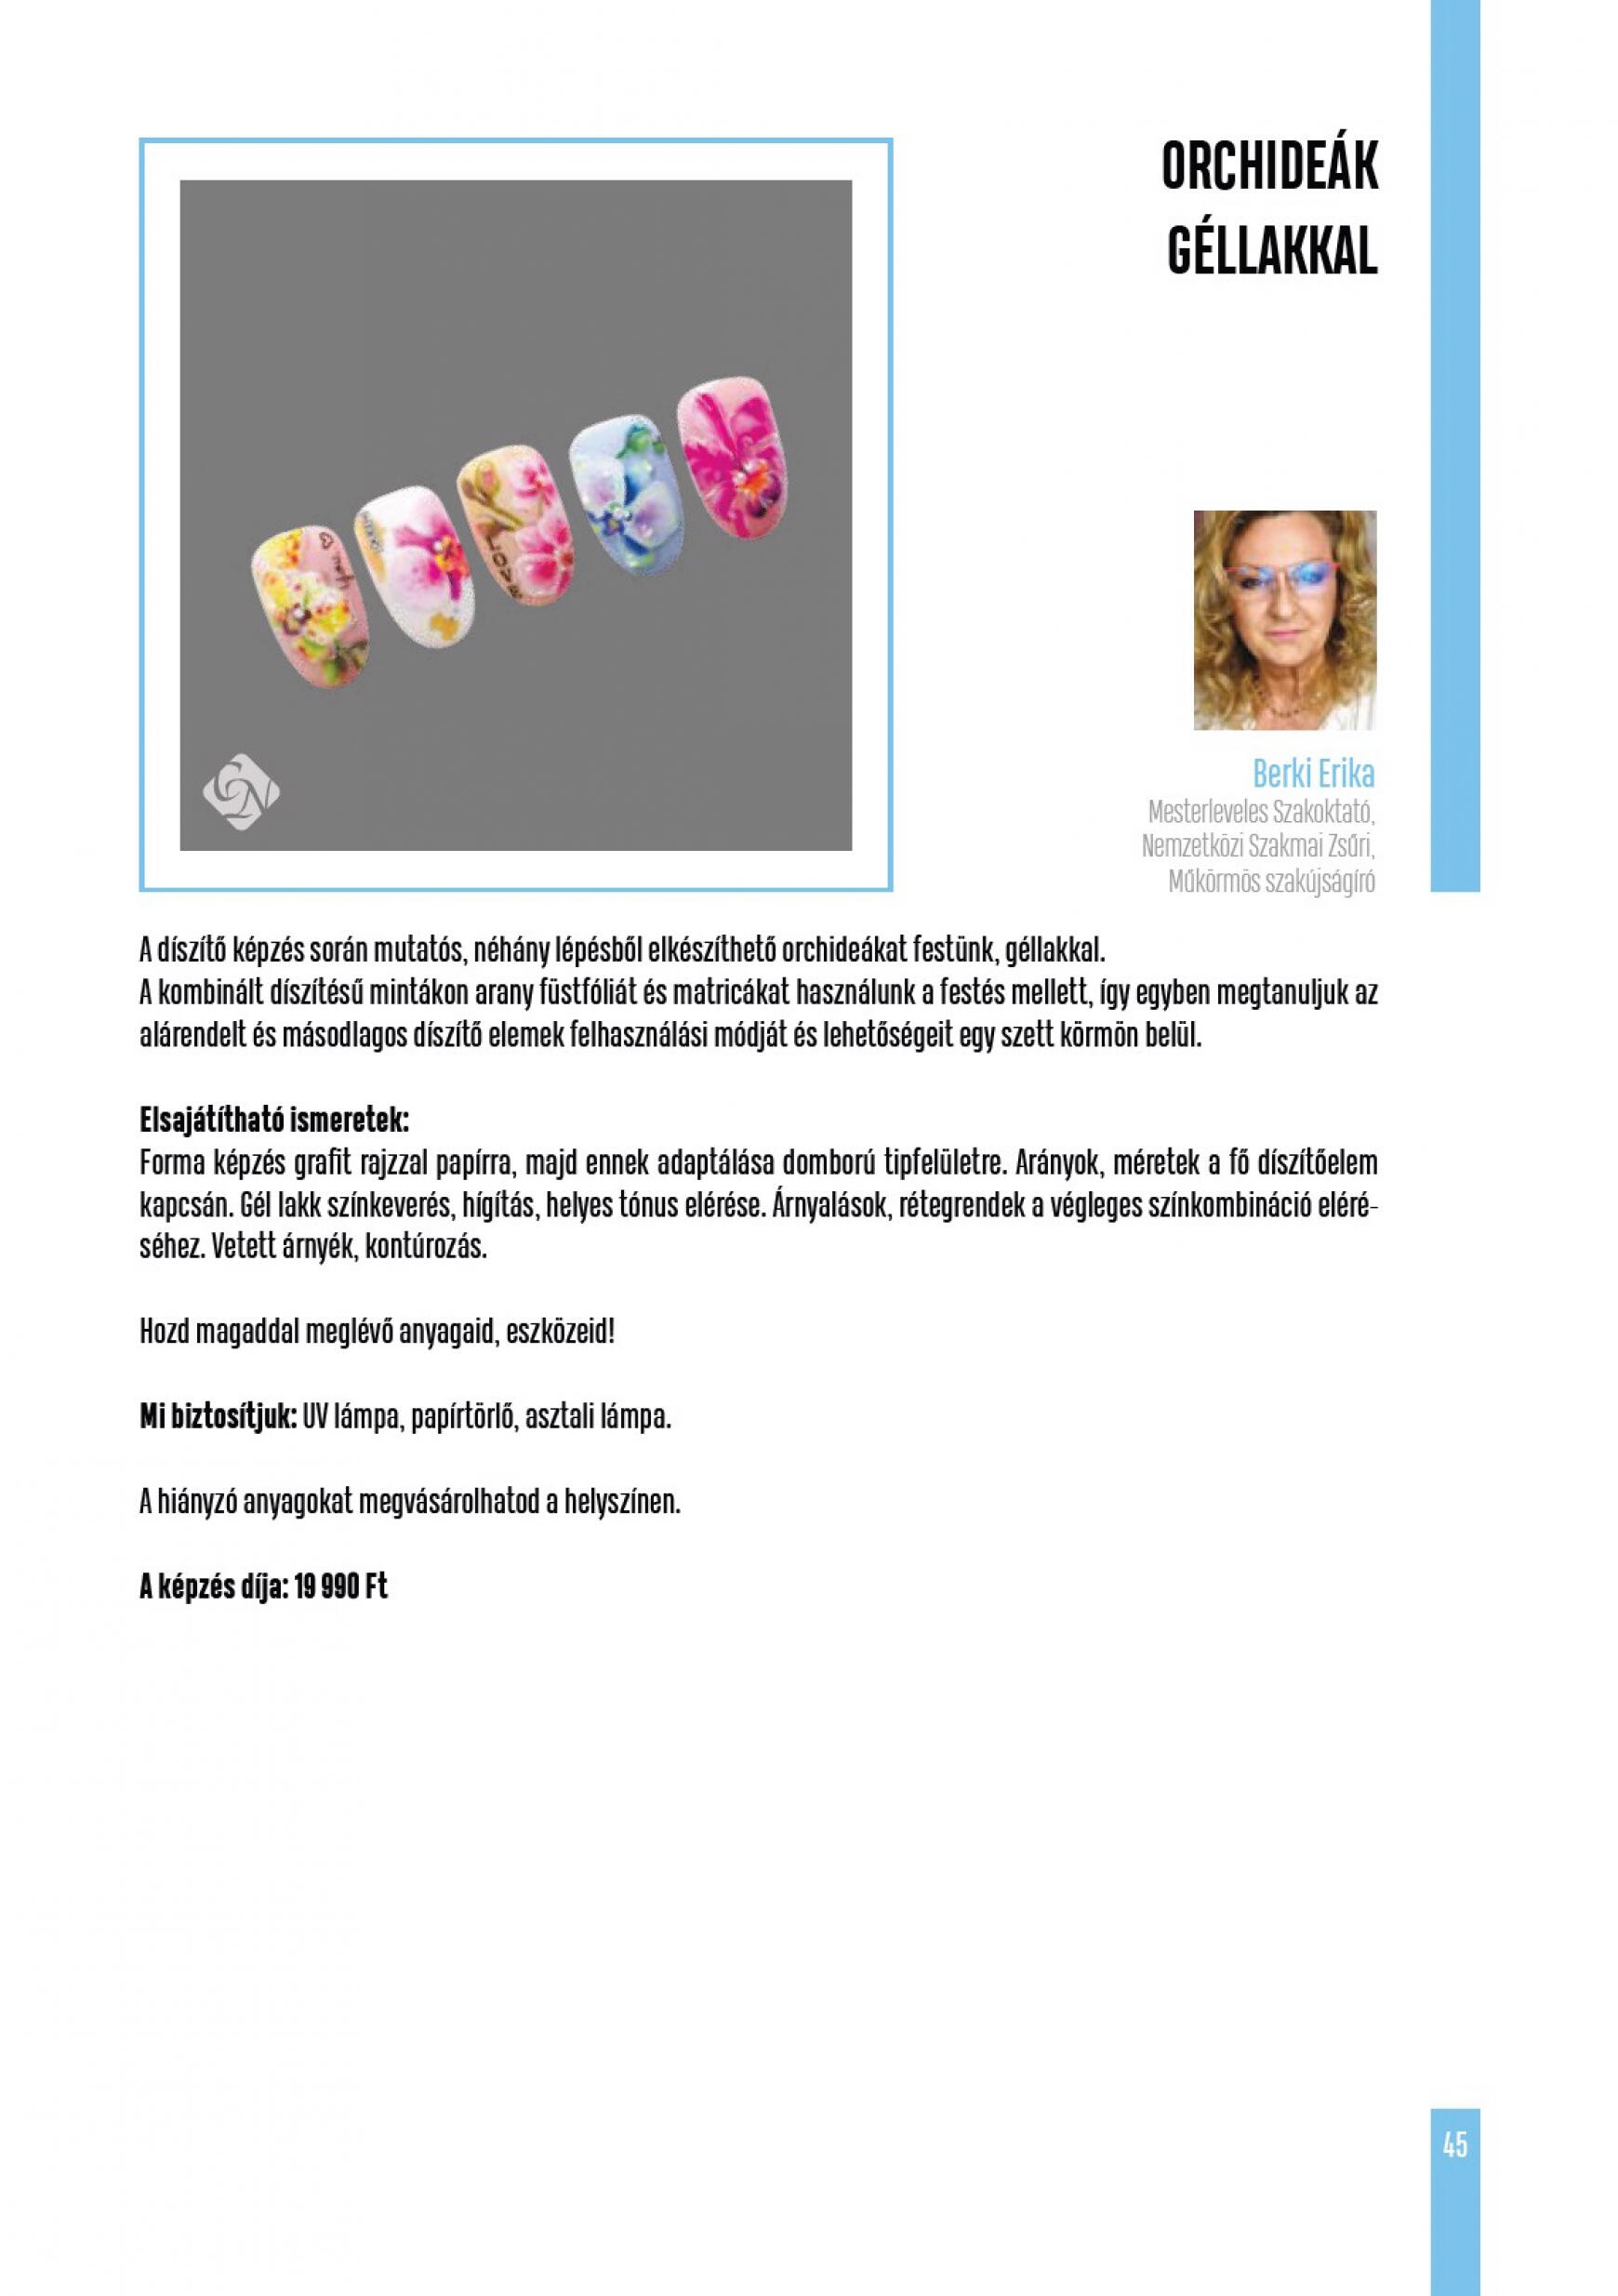 crystal-nails - Aktuális újság Crystal Nails - Tavasz/Nyár 05.01. - 08.31. - page: 45